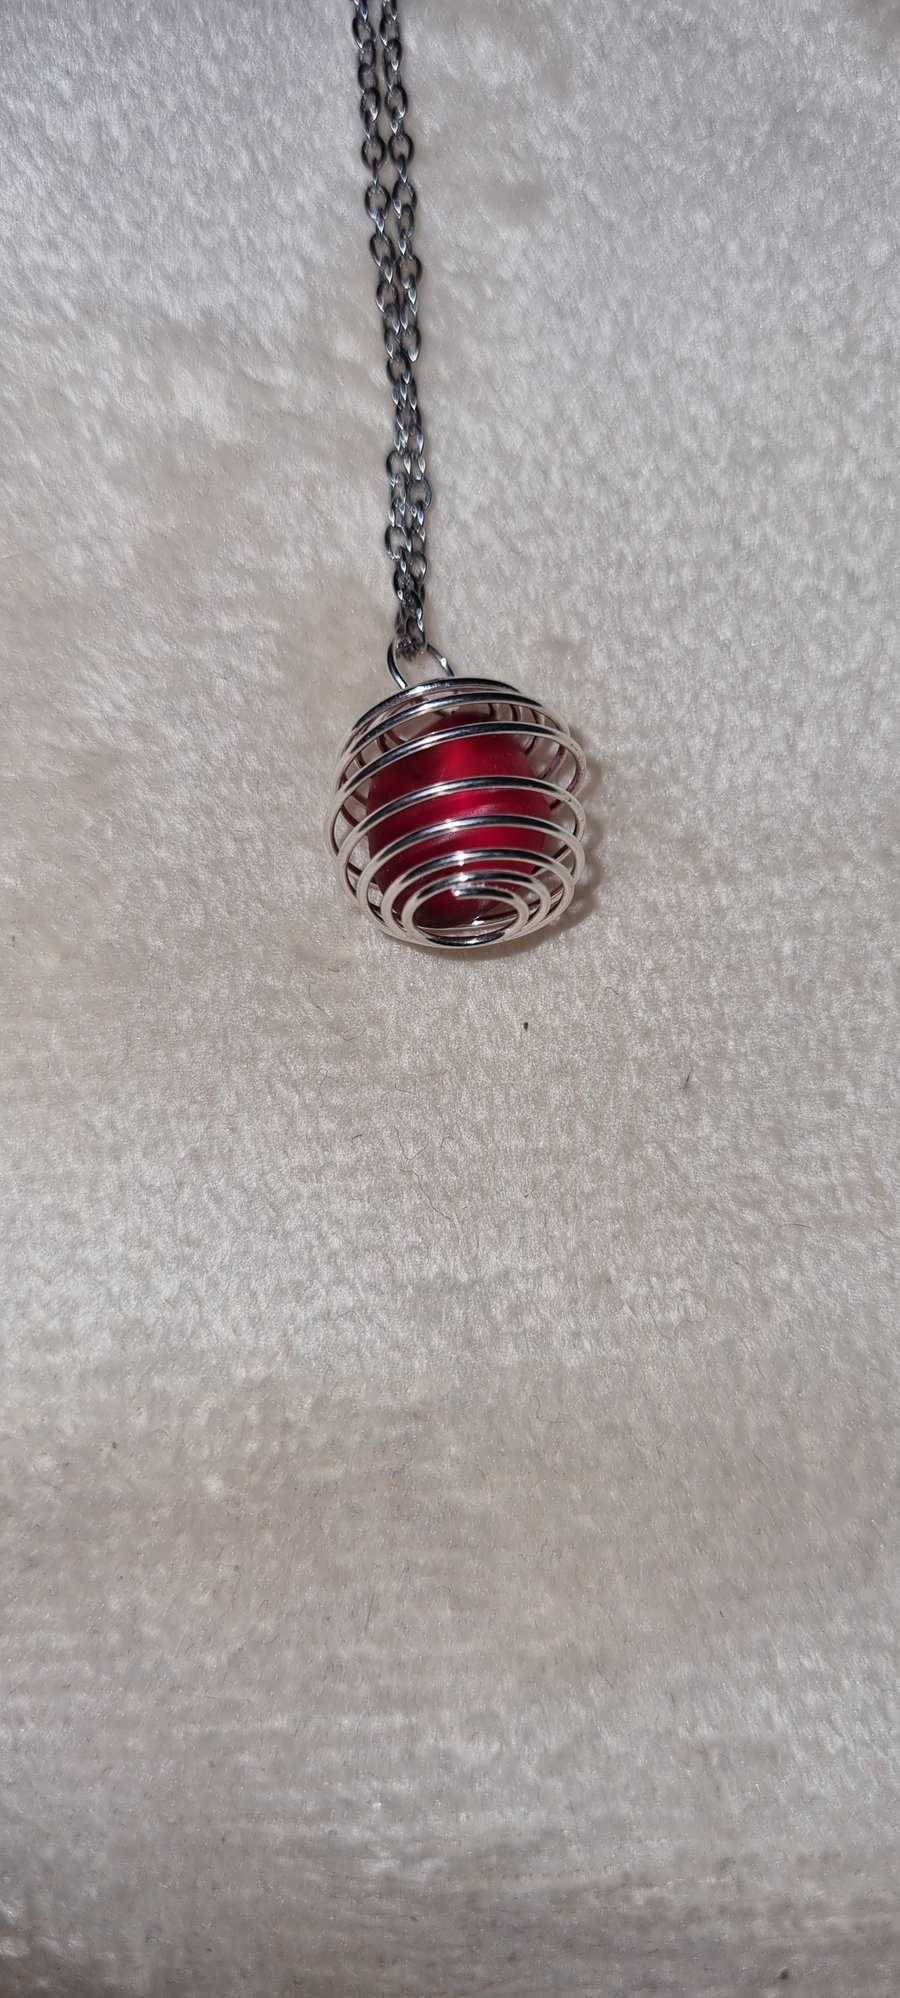 Rare Red seaglass pendant